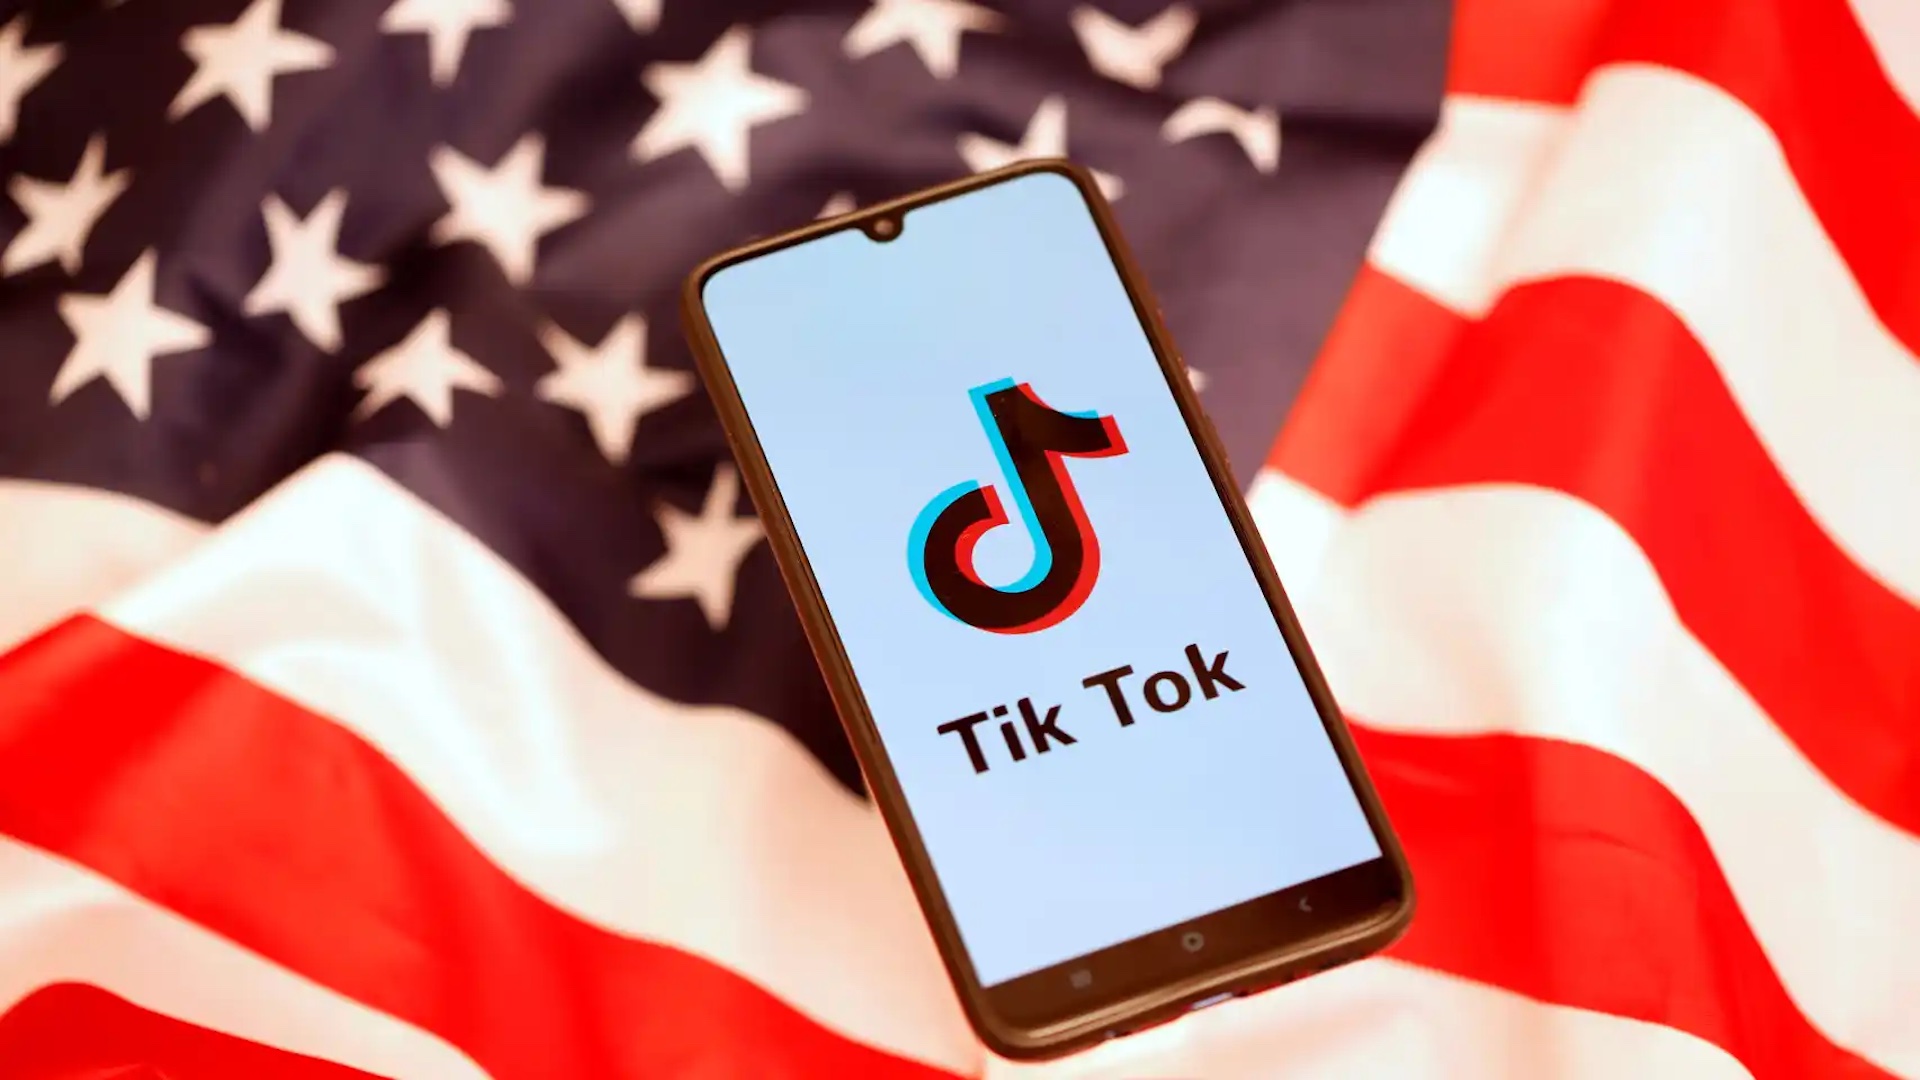 Montana se convierte en el primer estado en EEUU que prohíbe TikTok